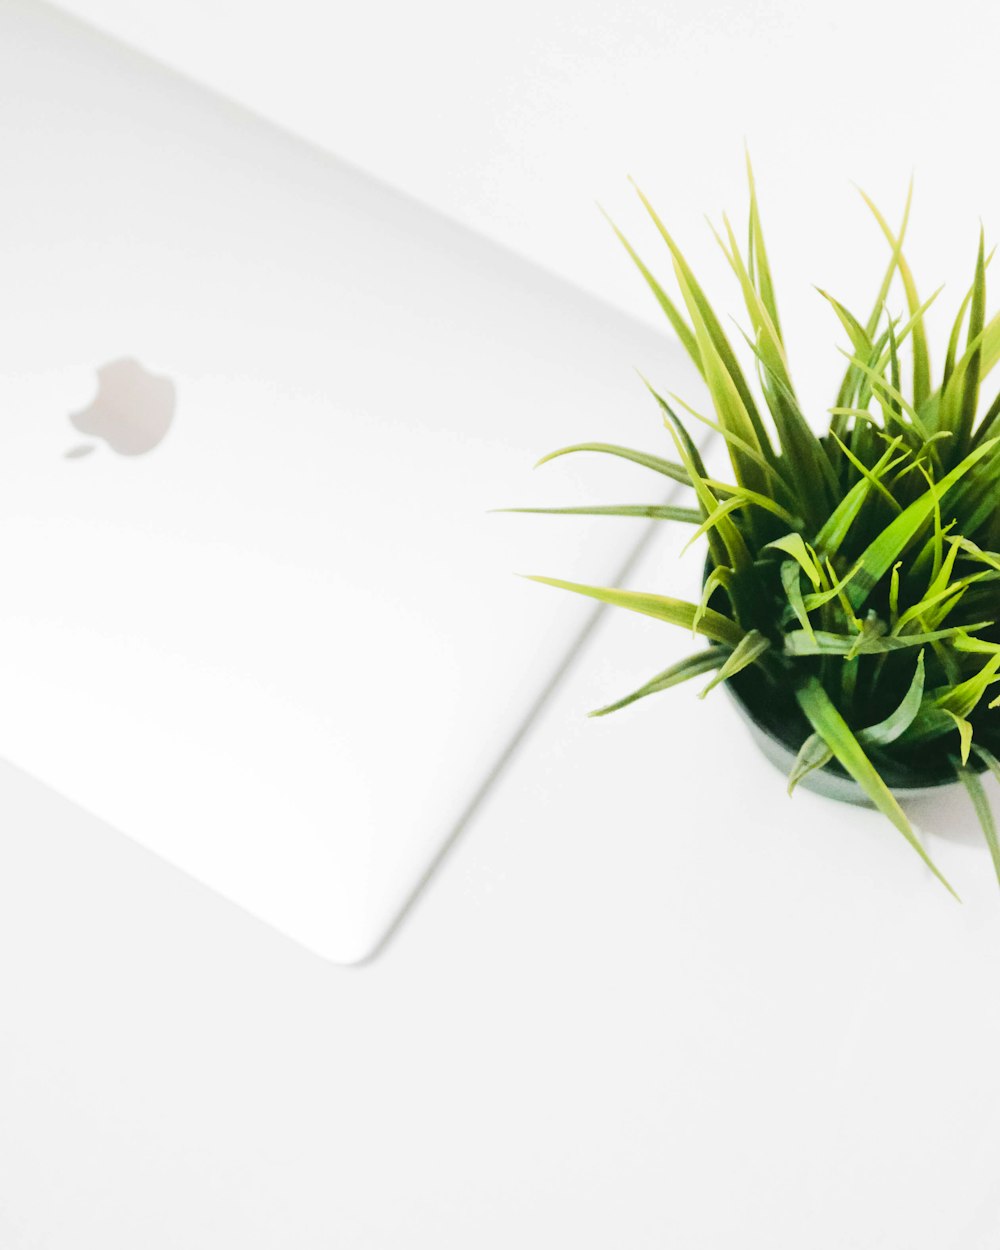 MacBook bianco accanto alla pianta a foglia verde